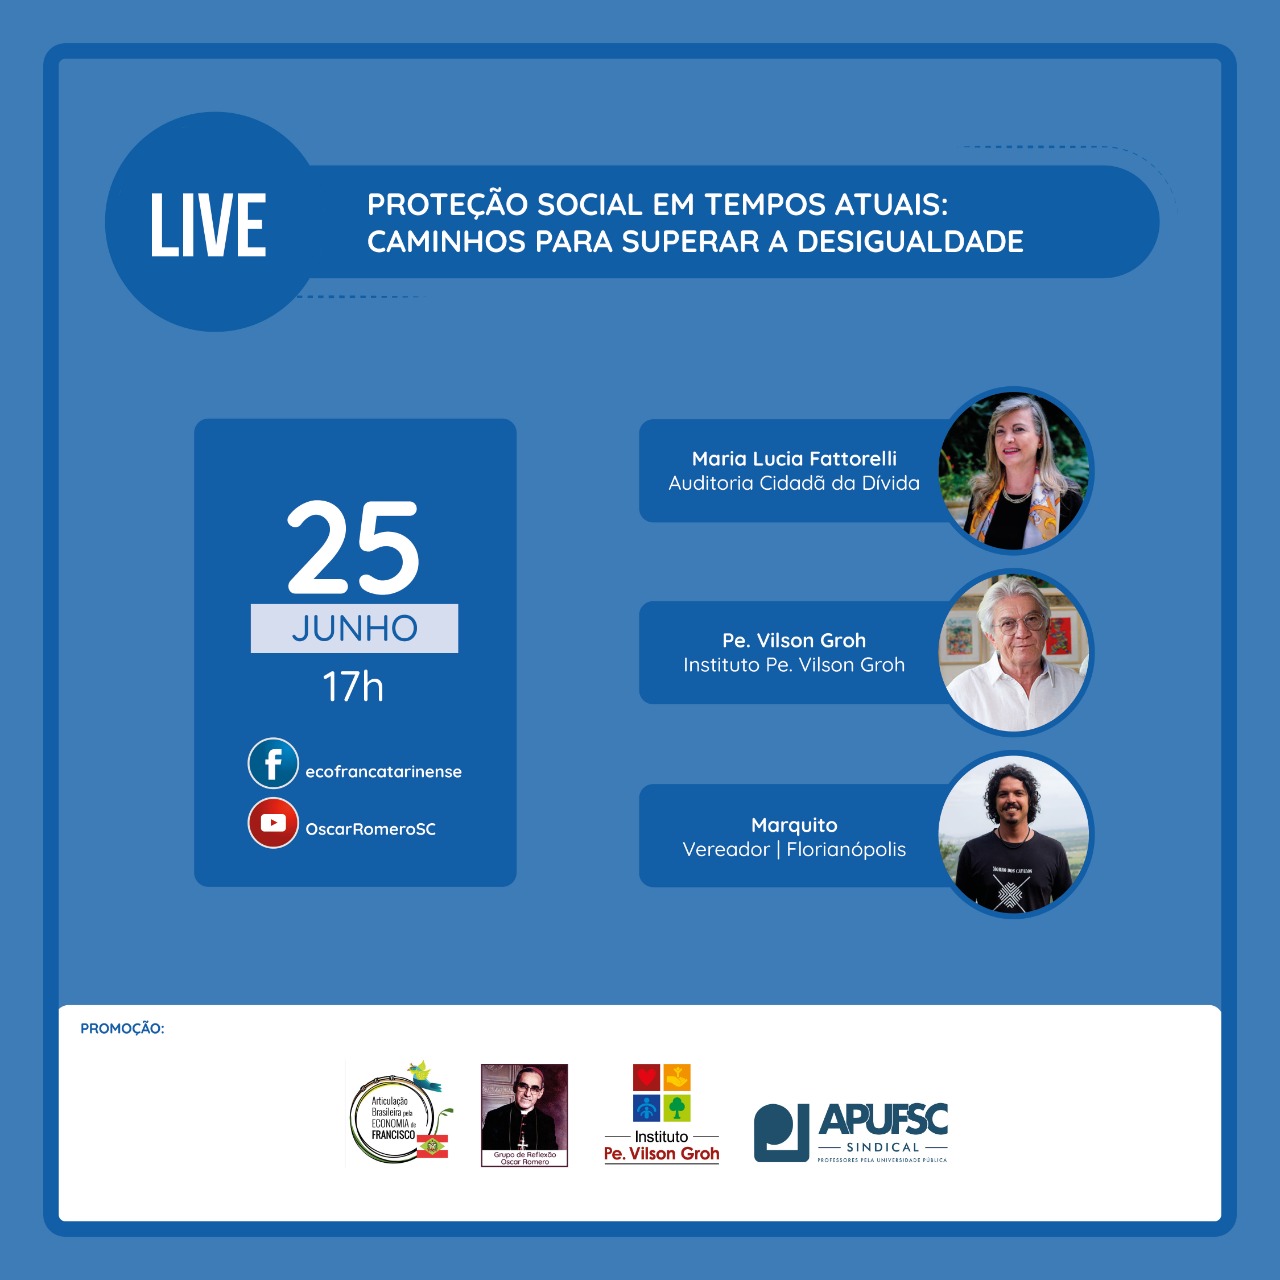 Live: “Proteção social em tempos atuais: caminhos para superar a desigualdade”